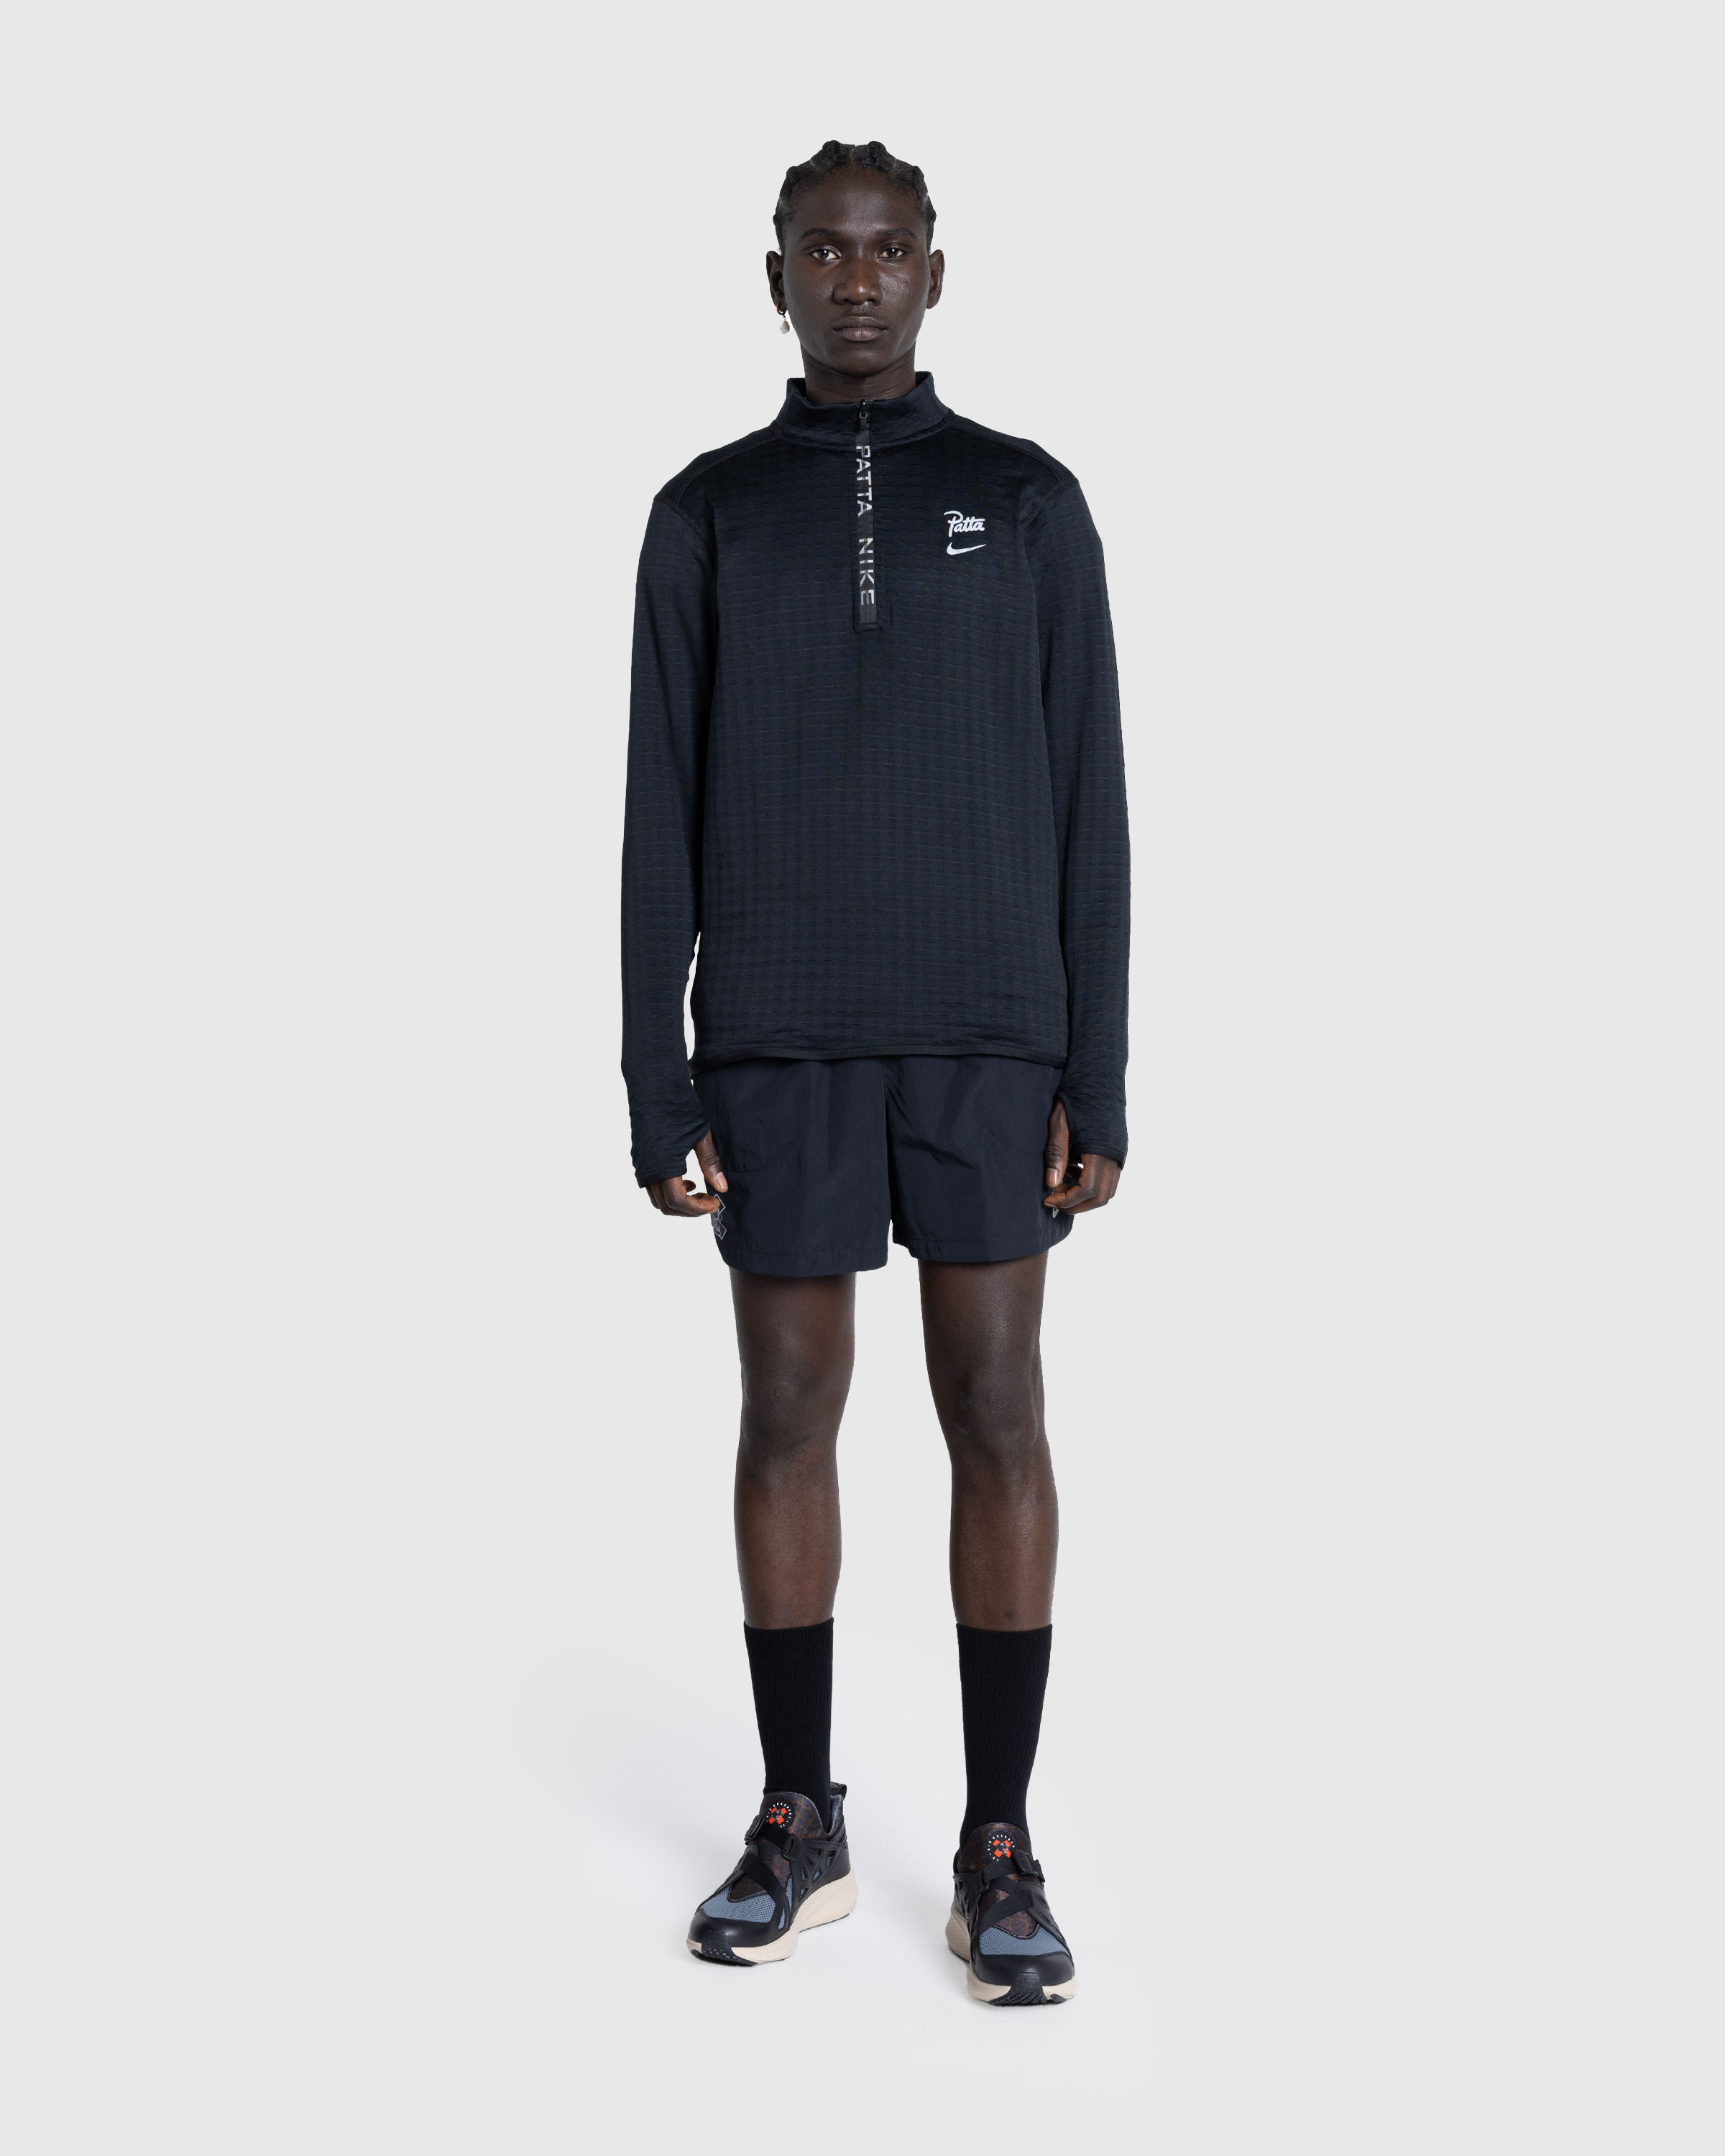 Nike x Patta – Half-Zip Long-Sleeve Top Black - Zip-Ups - Black - Image 3